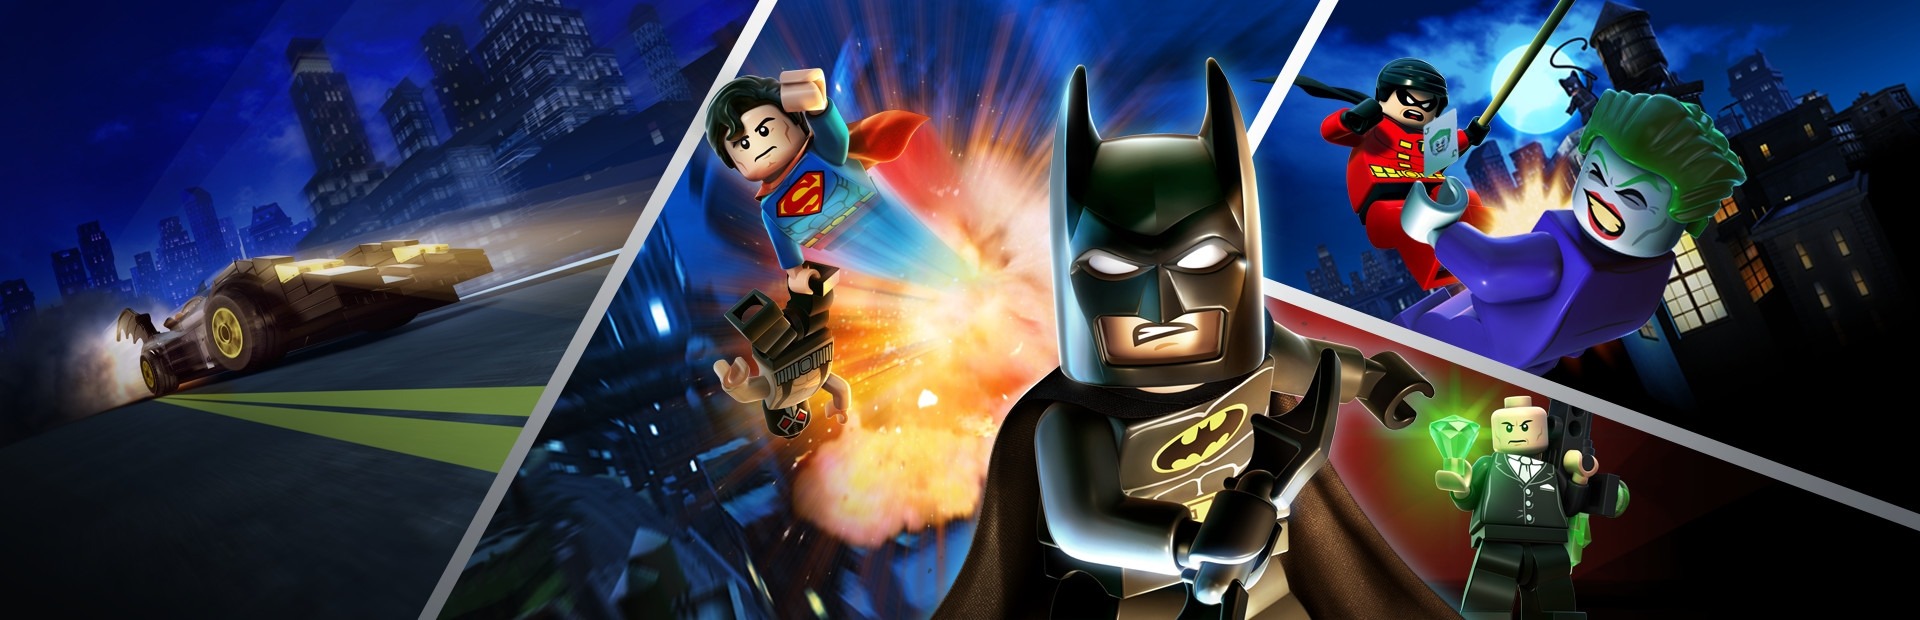 Banner Lego Batman 2: DC Super Heroes